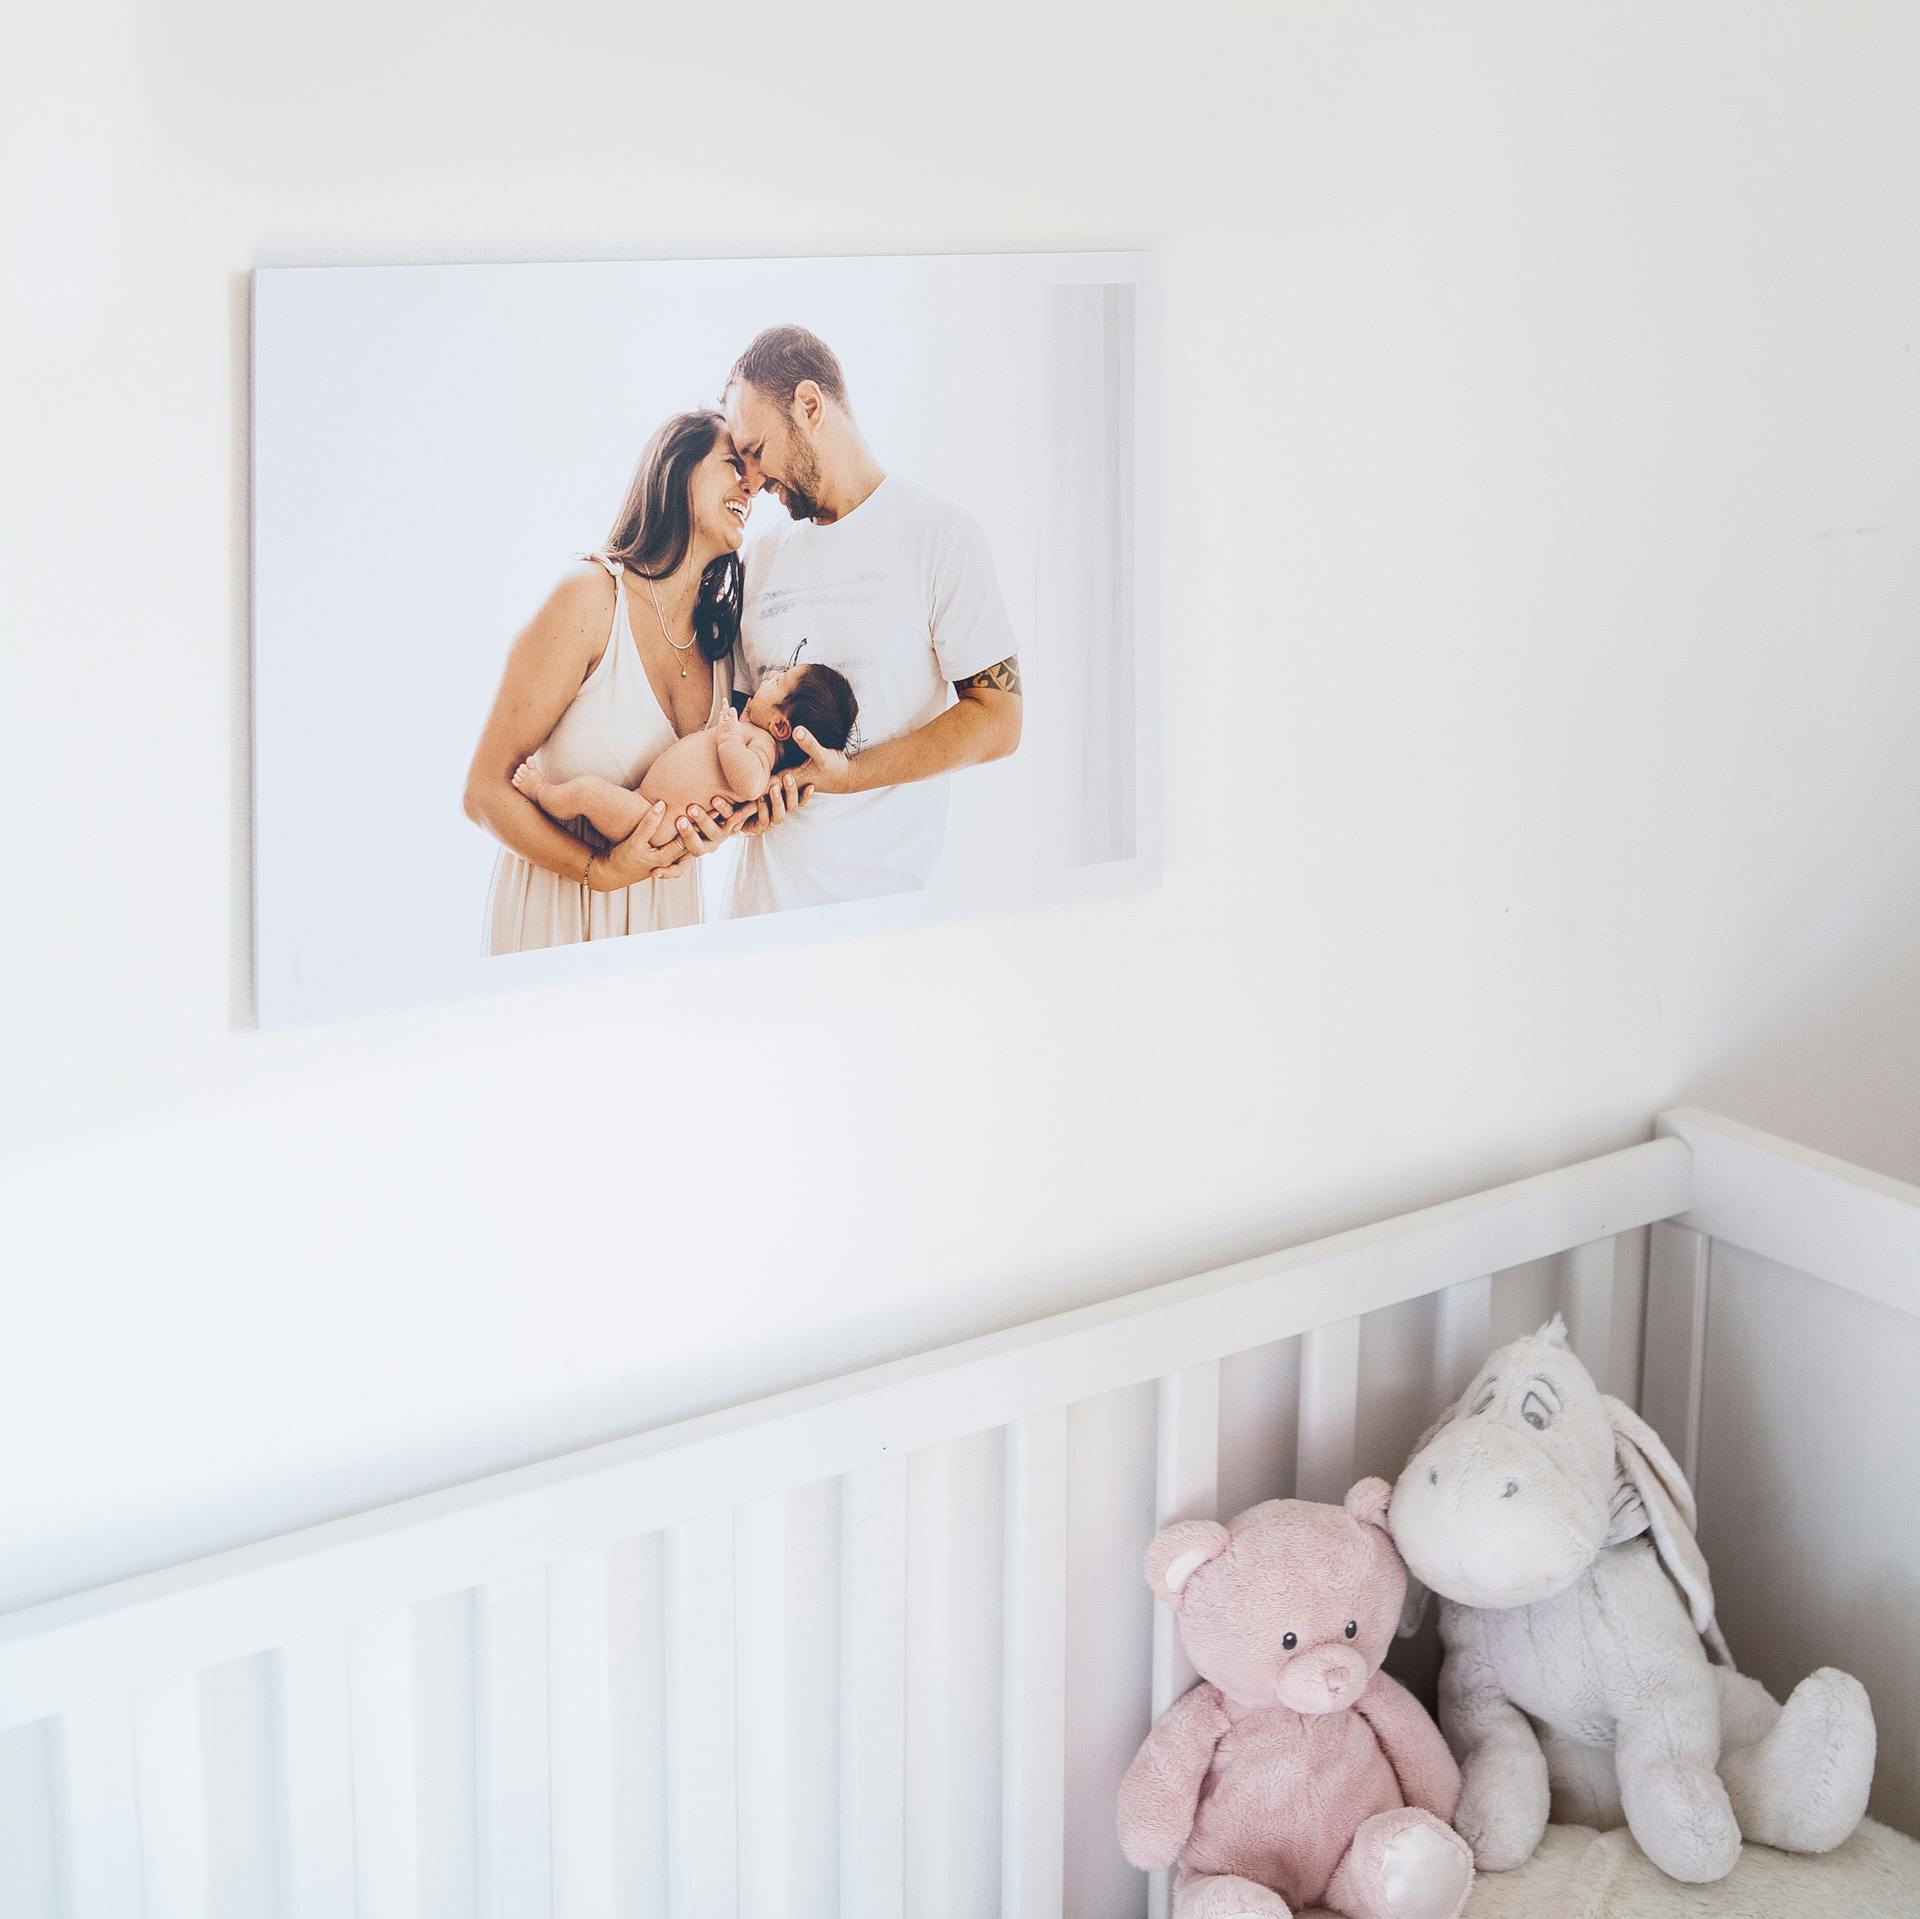 Una foto de una pareja con su bebé recién nacido colgada en una habitación | Foto: Pexels